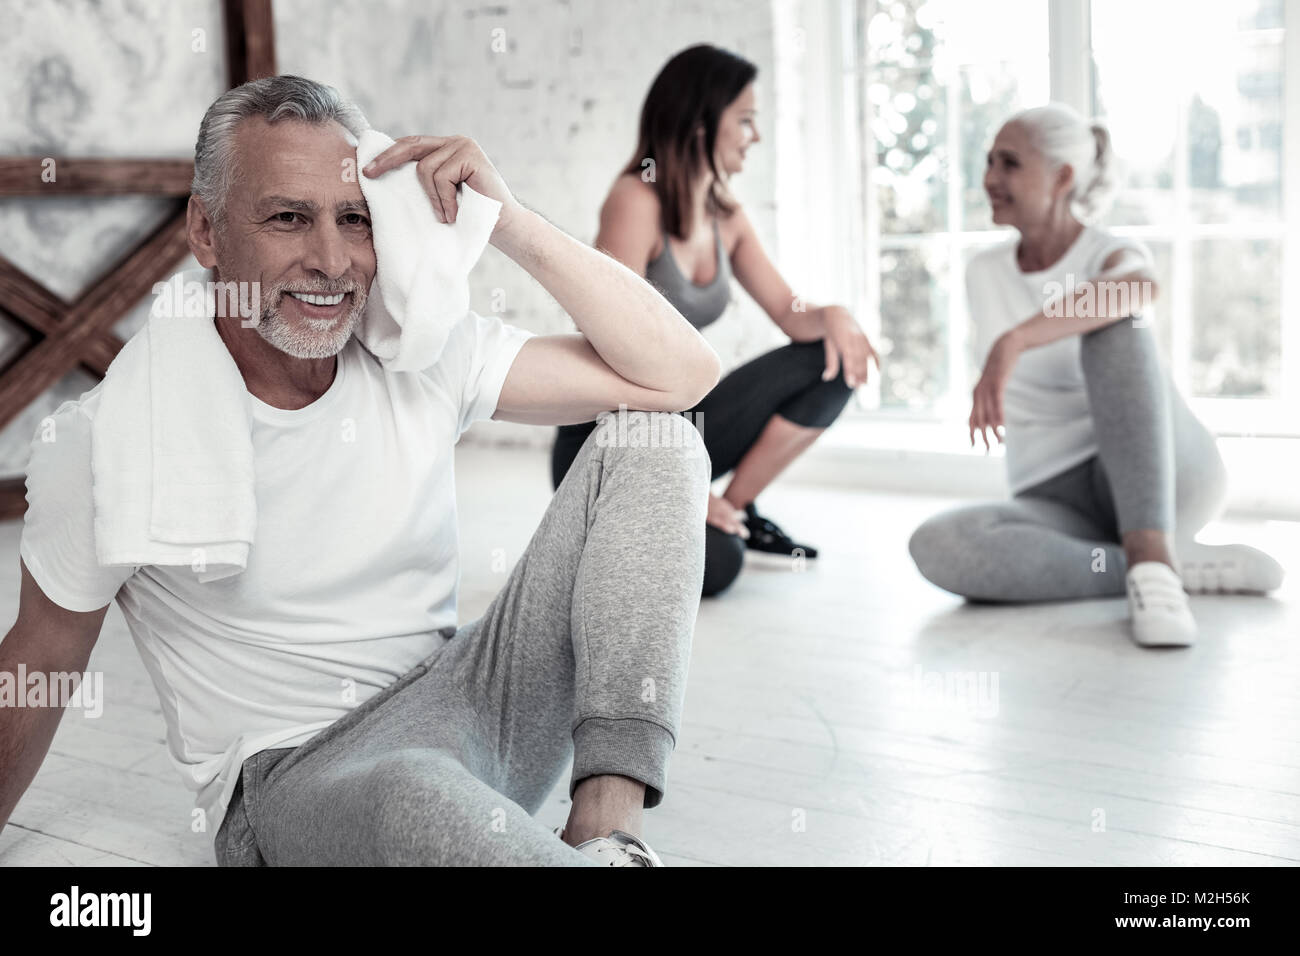 Fröhliche pensionierter Mann übertragen, während seine Stirn mit Tuch abwischen Stockfoto